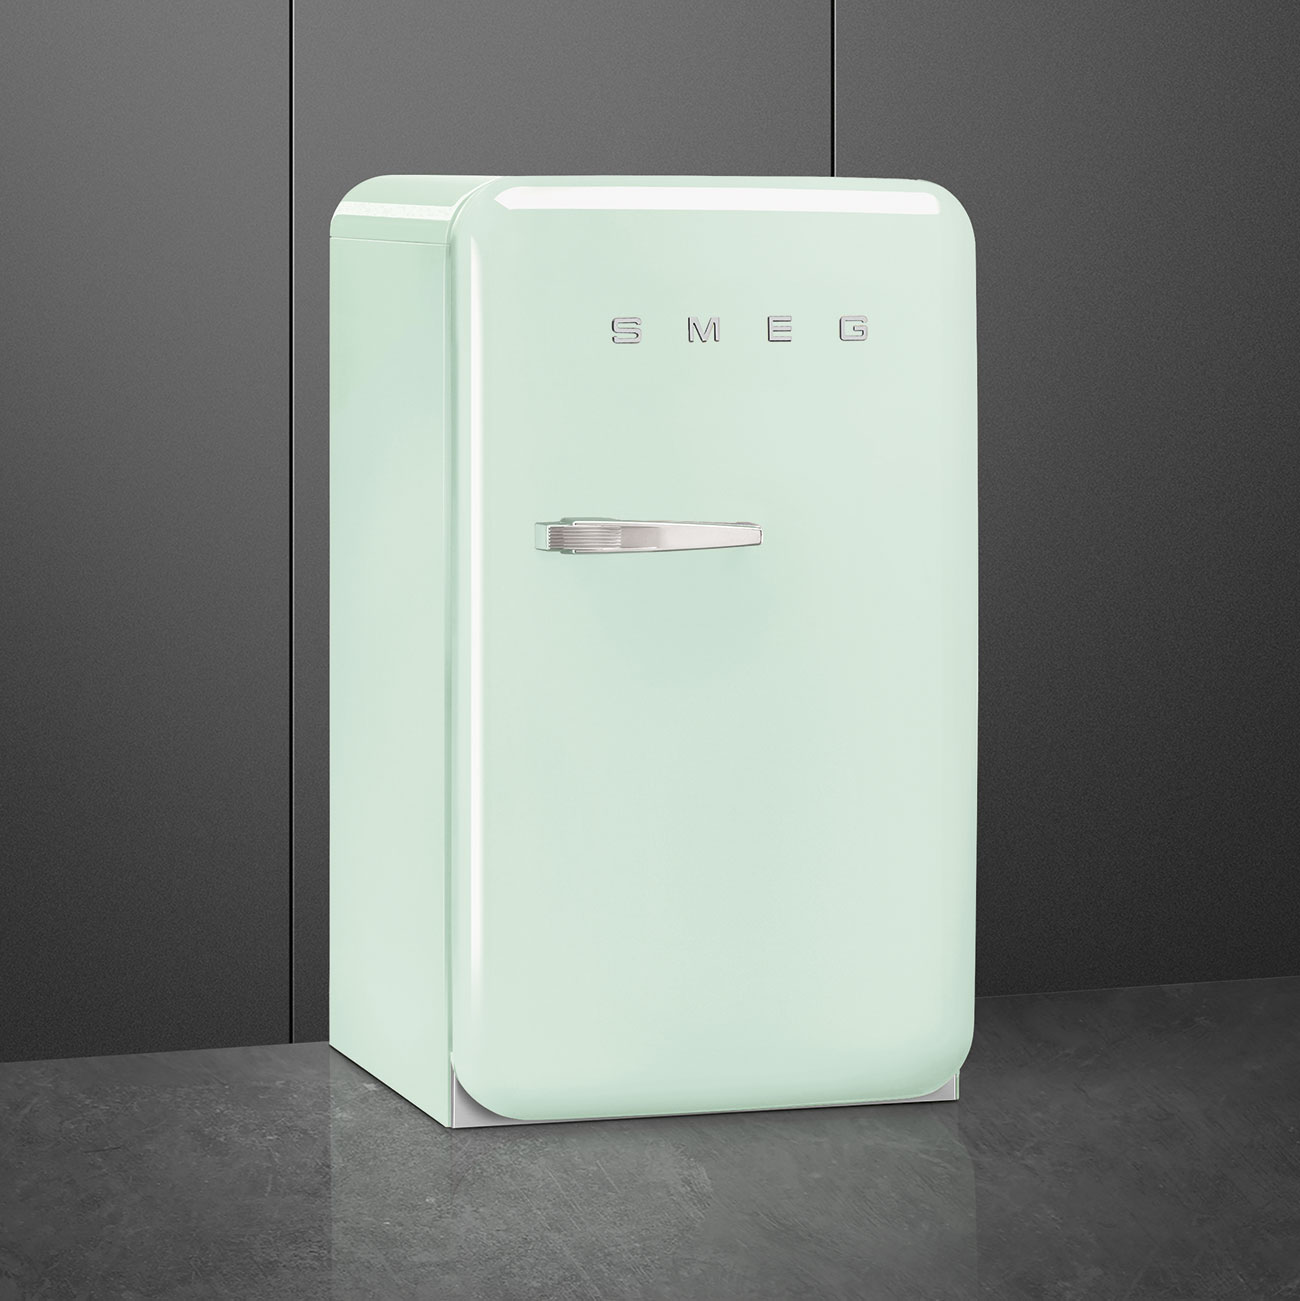 Pastellgrün Retro-Kühlschränke von Smeg_3